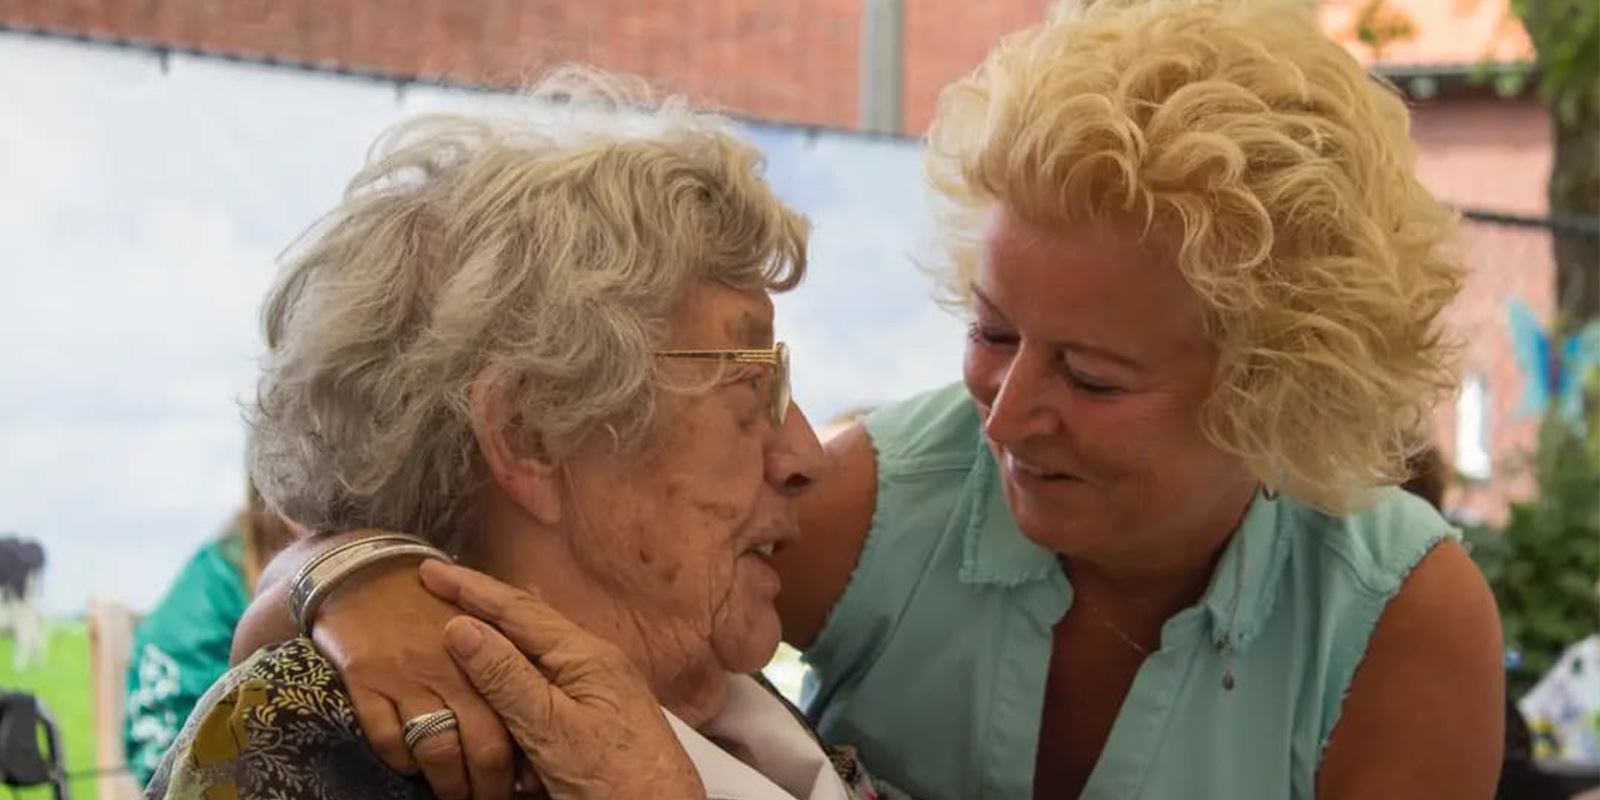 Het Beatrixhuis, woonzorglocatie voor mensen met dementie, vierde feest vanwege het vijfjarig bestaan. Op de foto een bewoner, knuffelend met een verwant. Ze kijken blij naar elkaar.